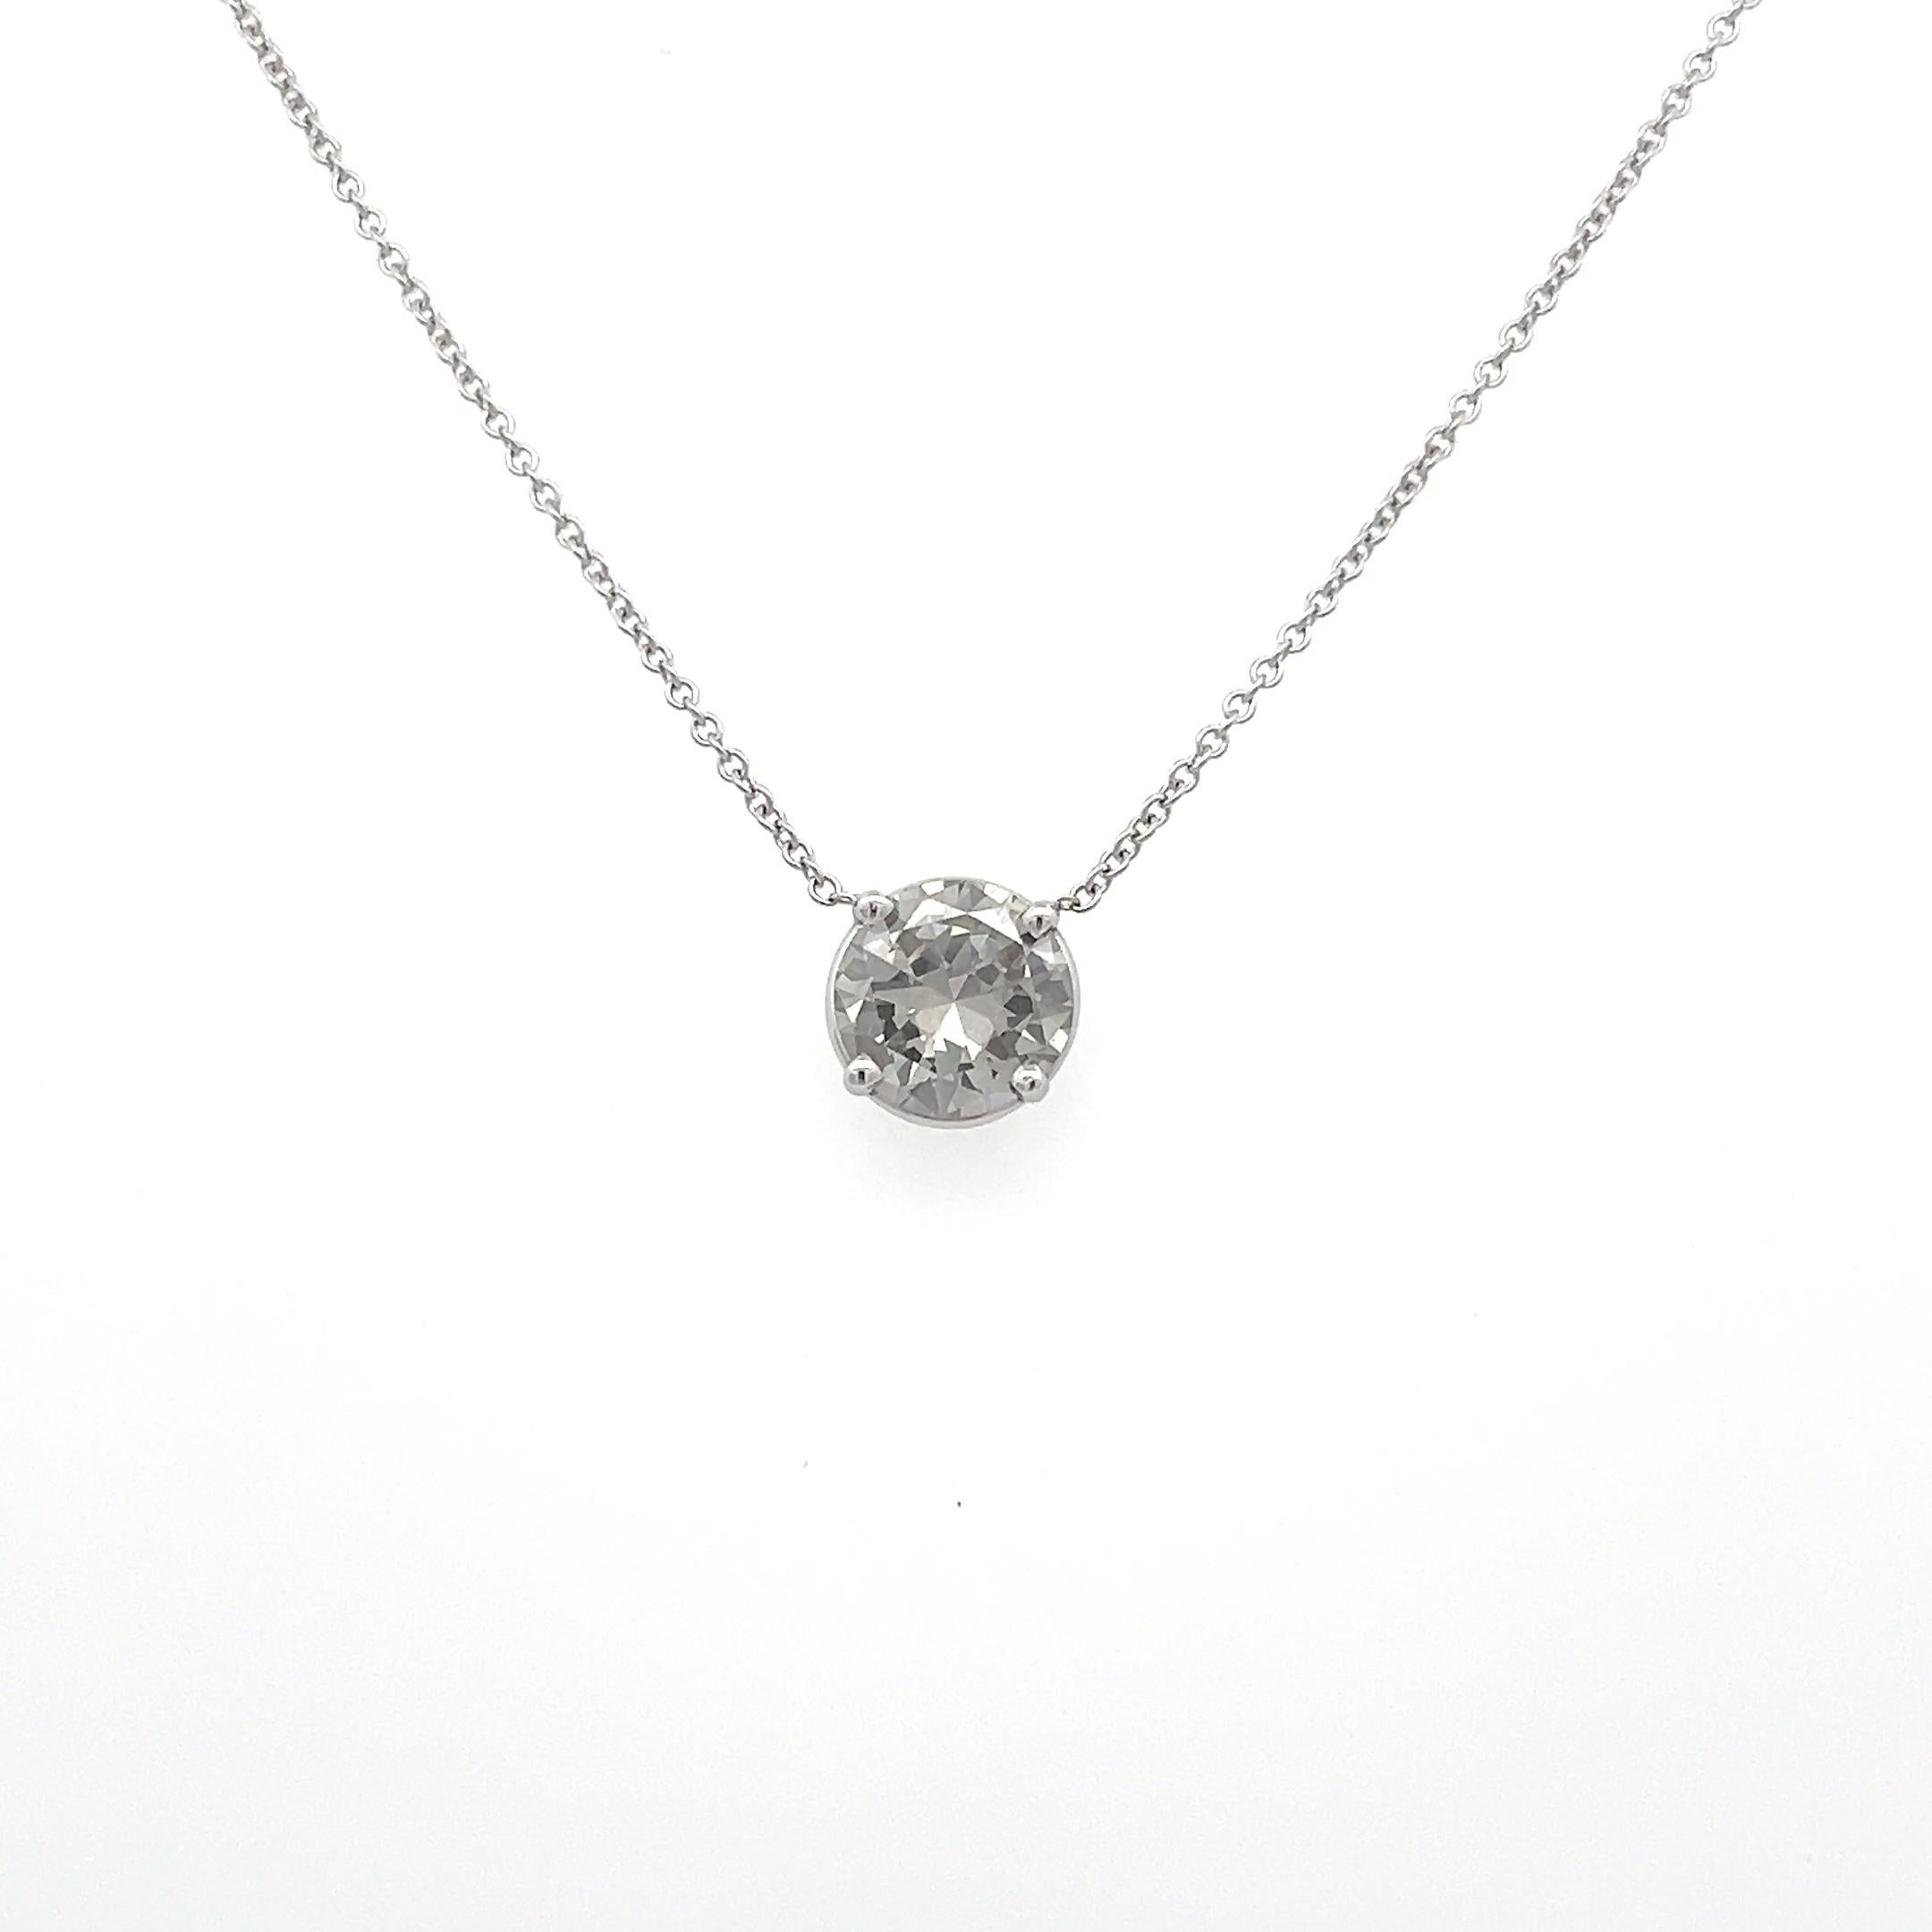 Collier aus natürlichen grauen Diamanten, begleitet von einem GIA-Bericht. Dieser seltene Diamant ist in einem 4-Zacken-Korb gefasst und in der Mitte einer 1,3 mm dicken Kabelkette angebracht, die von 16